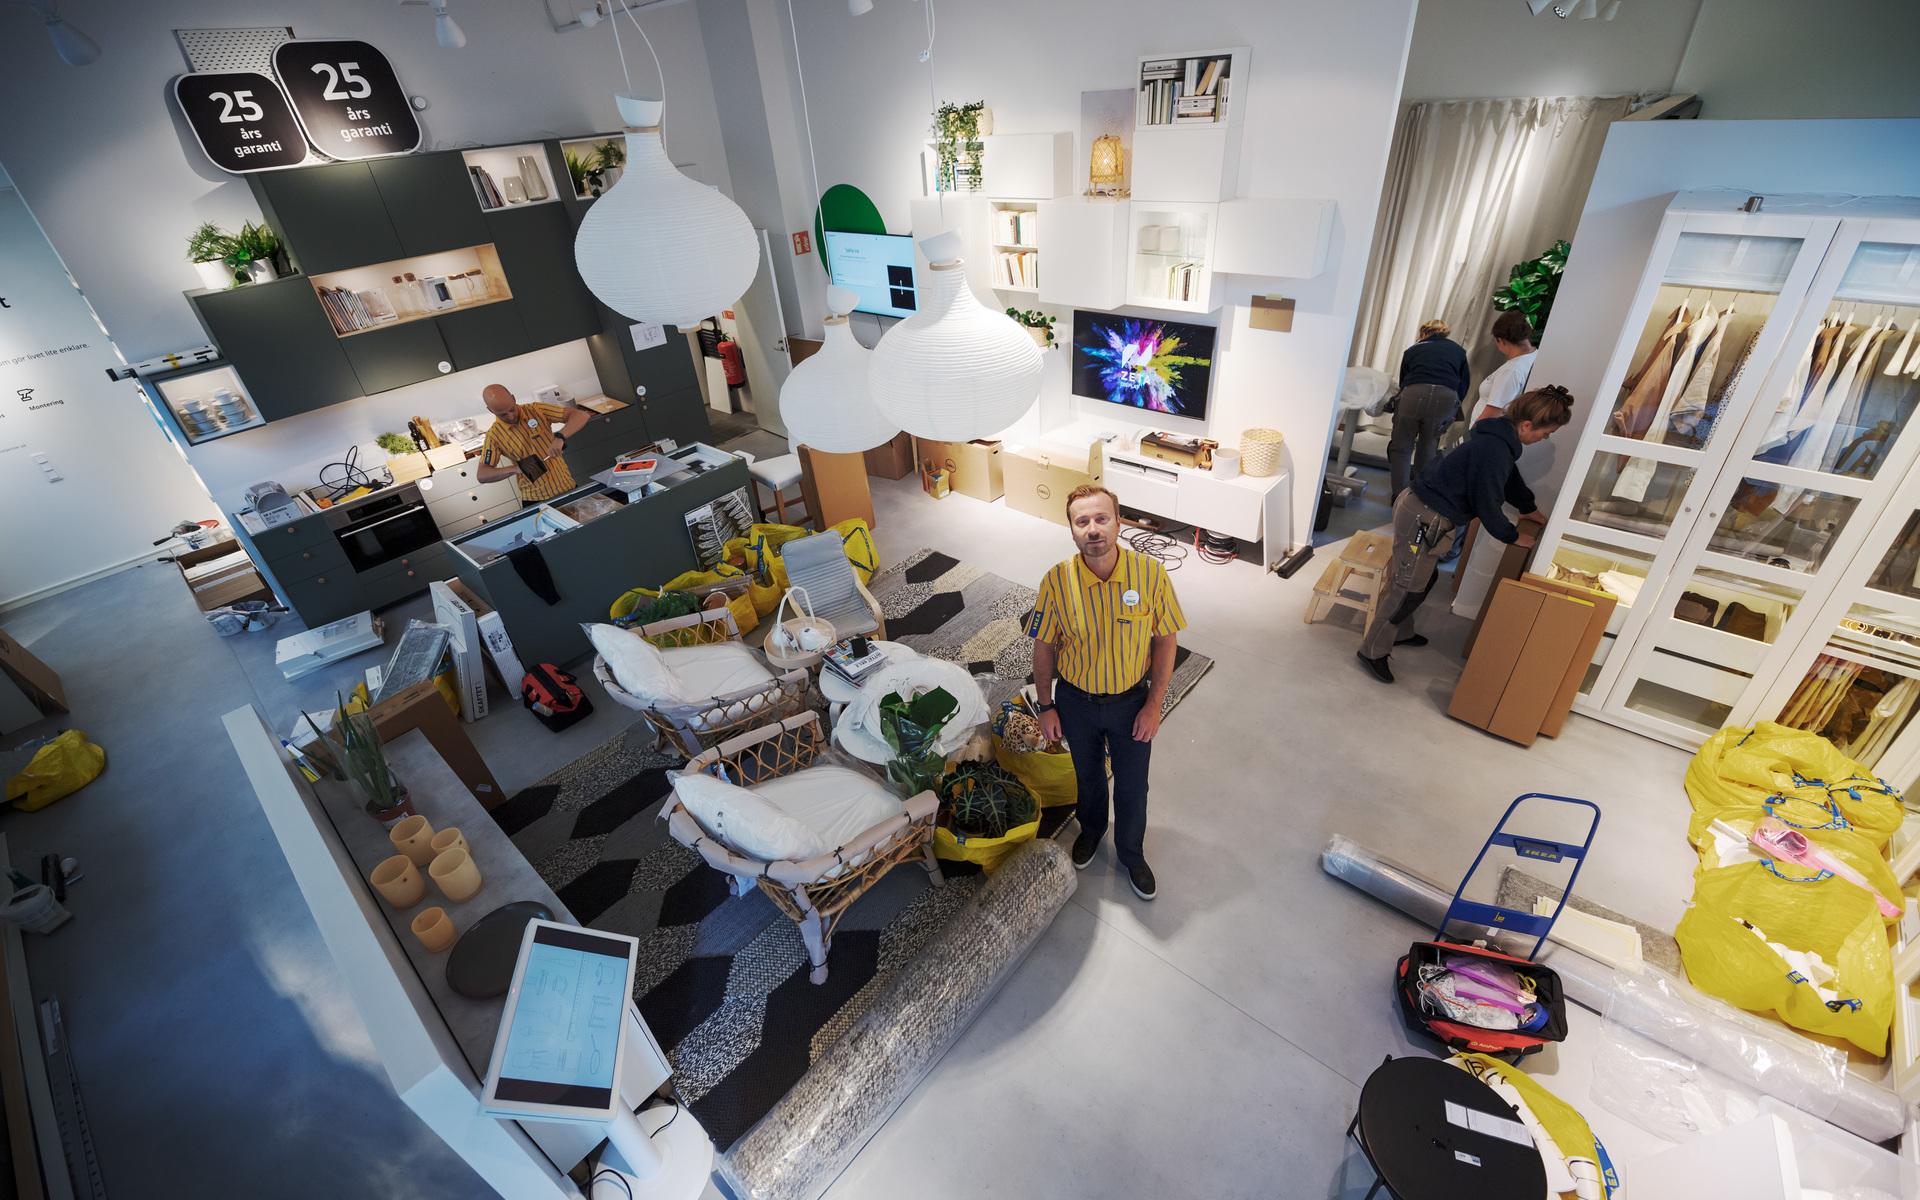 Tidigare i höstas öppnade en planeringsstudio på Kungsgatan i Göteborg.